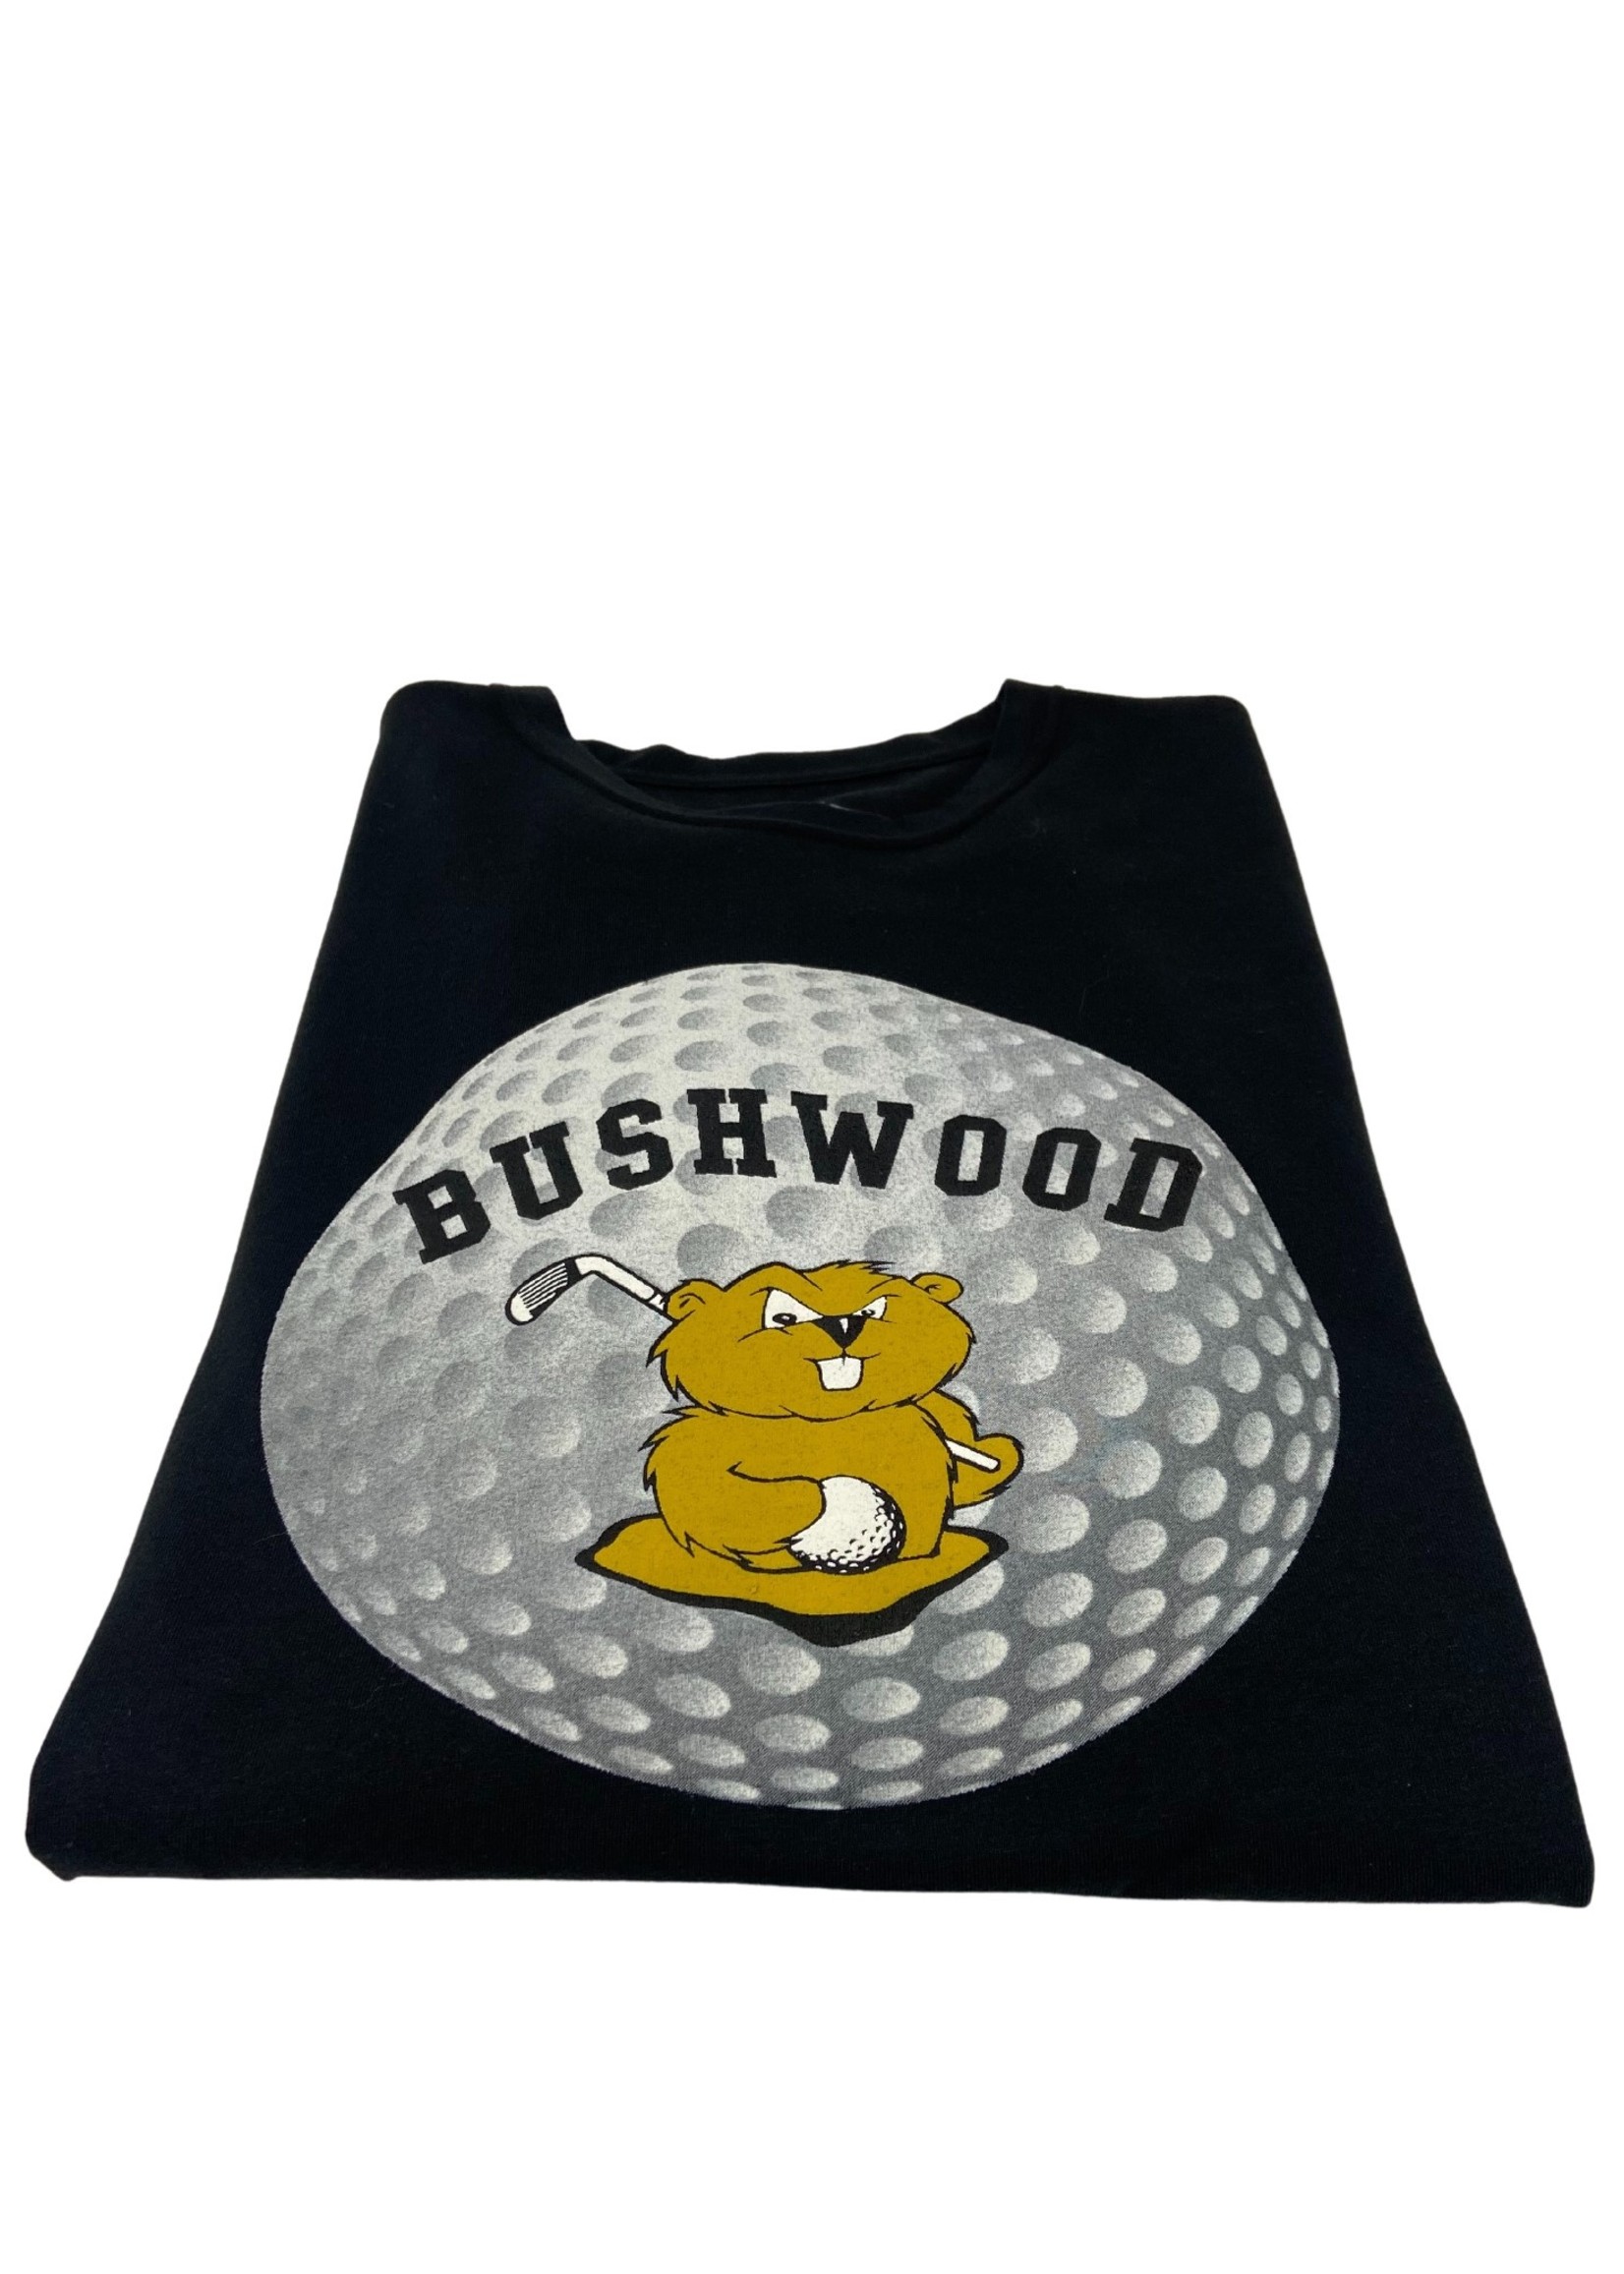 levelwear Levelwear Bushwood Logo T-Shirt